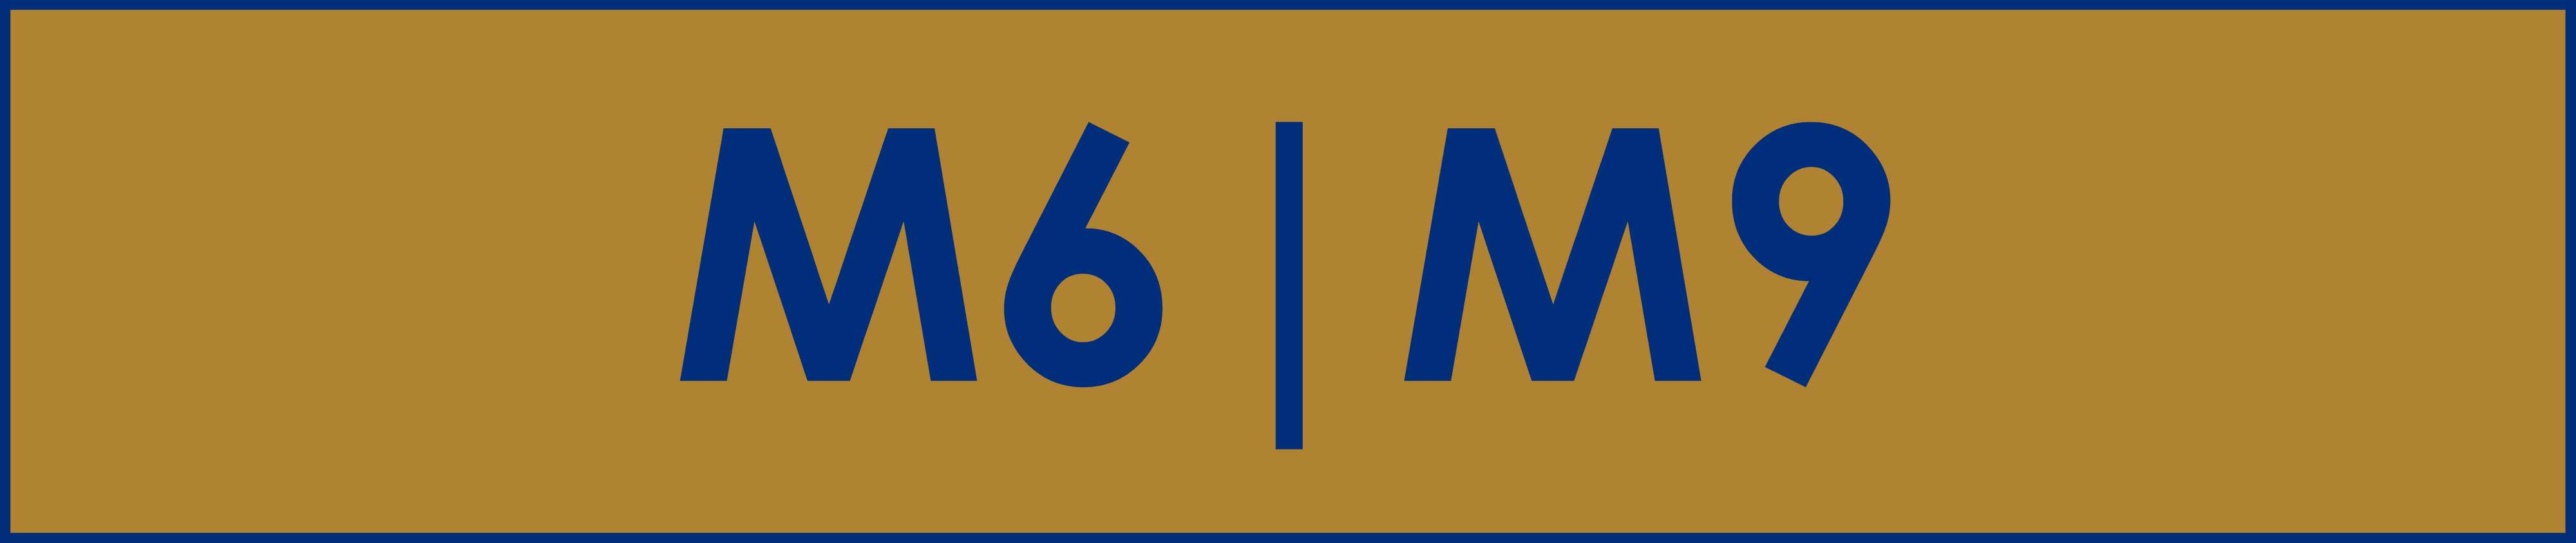 M6M9 bannière